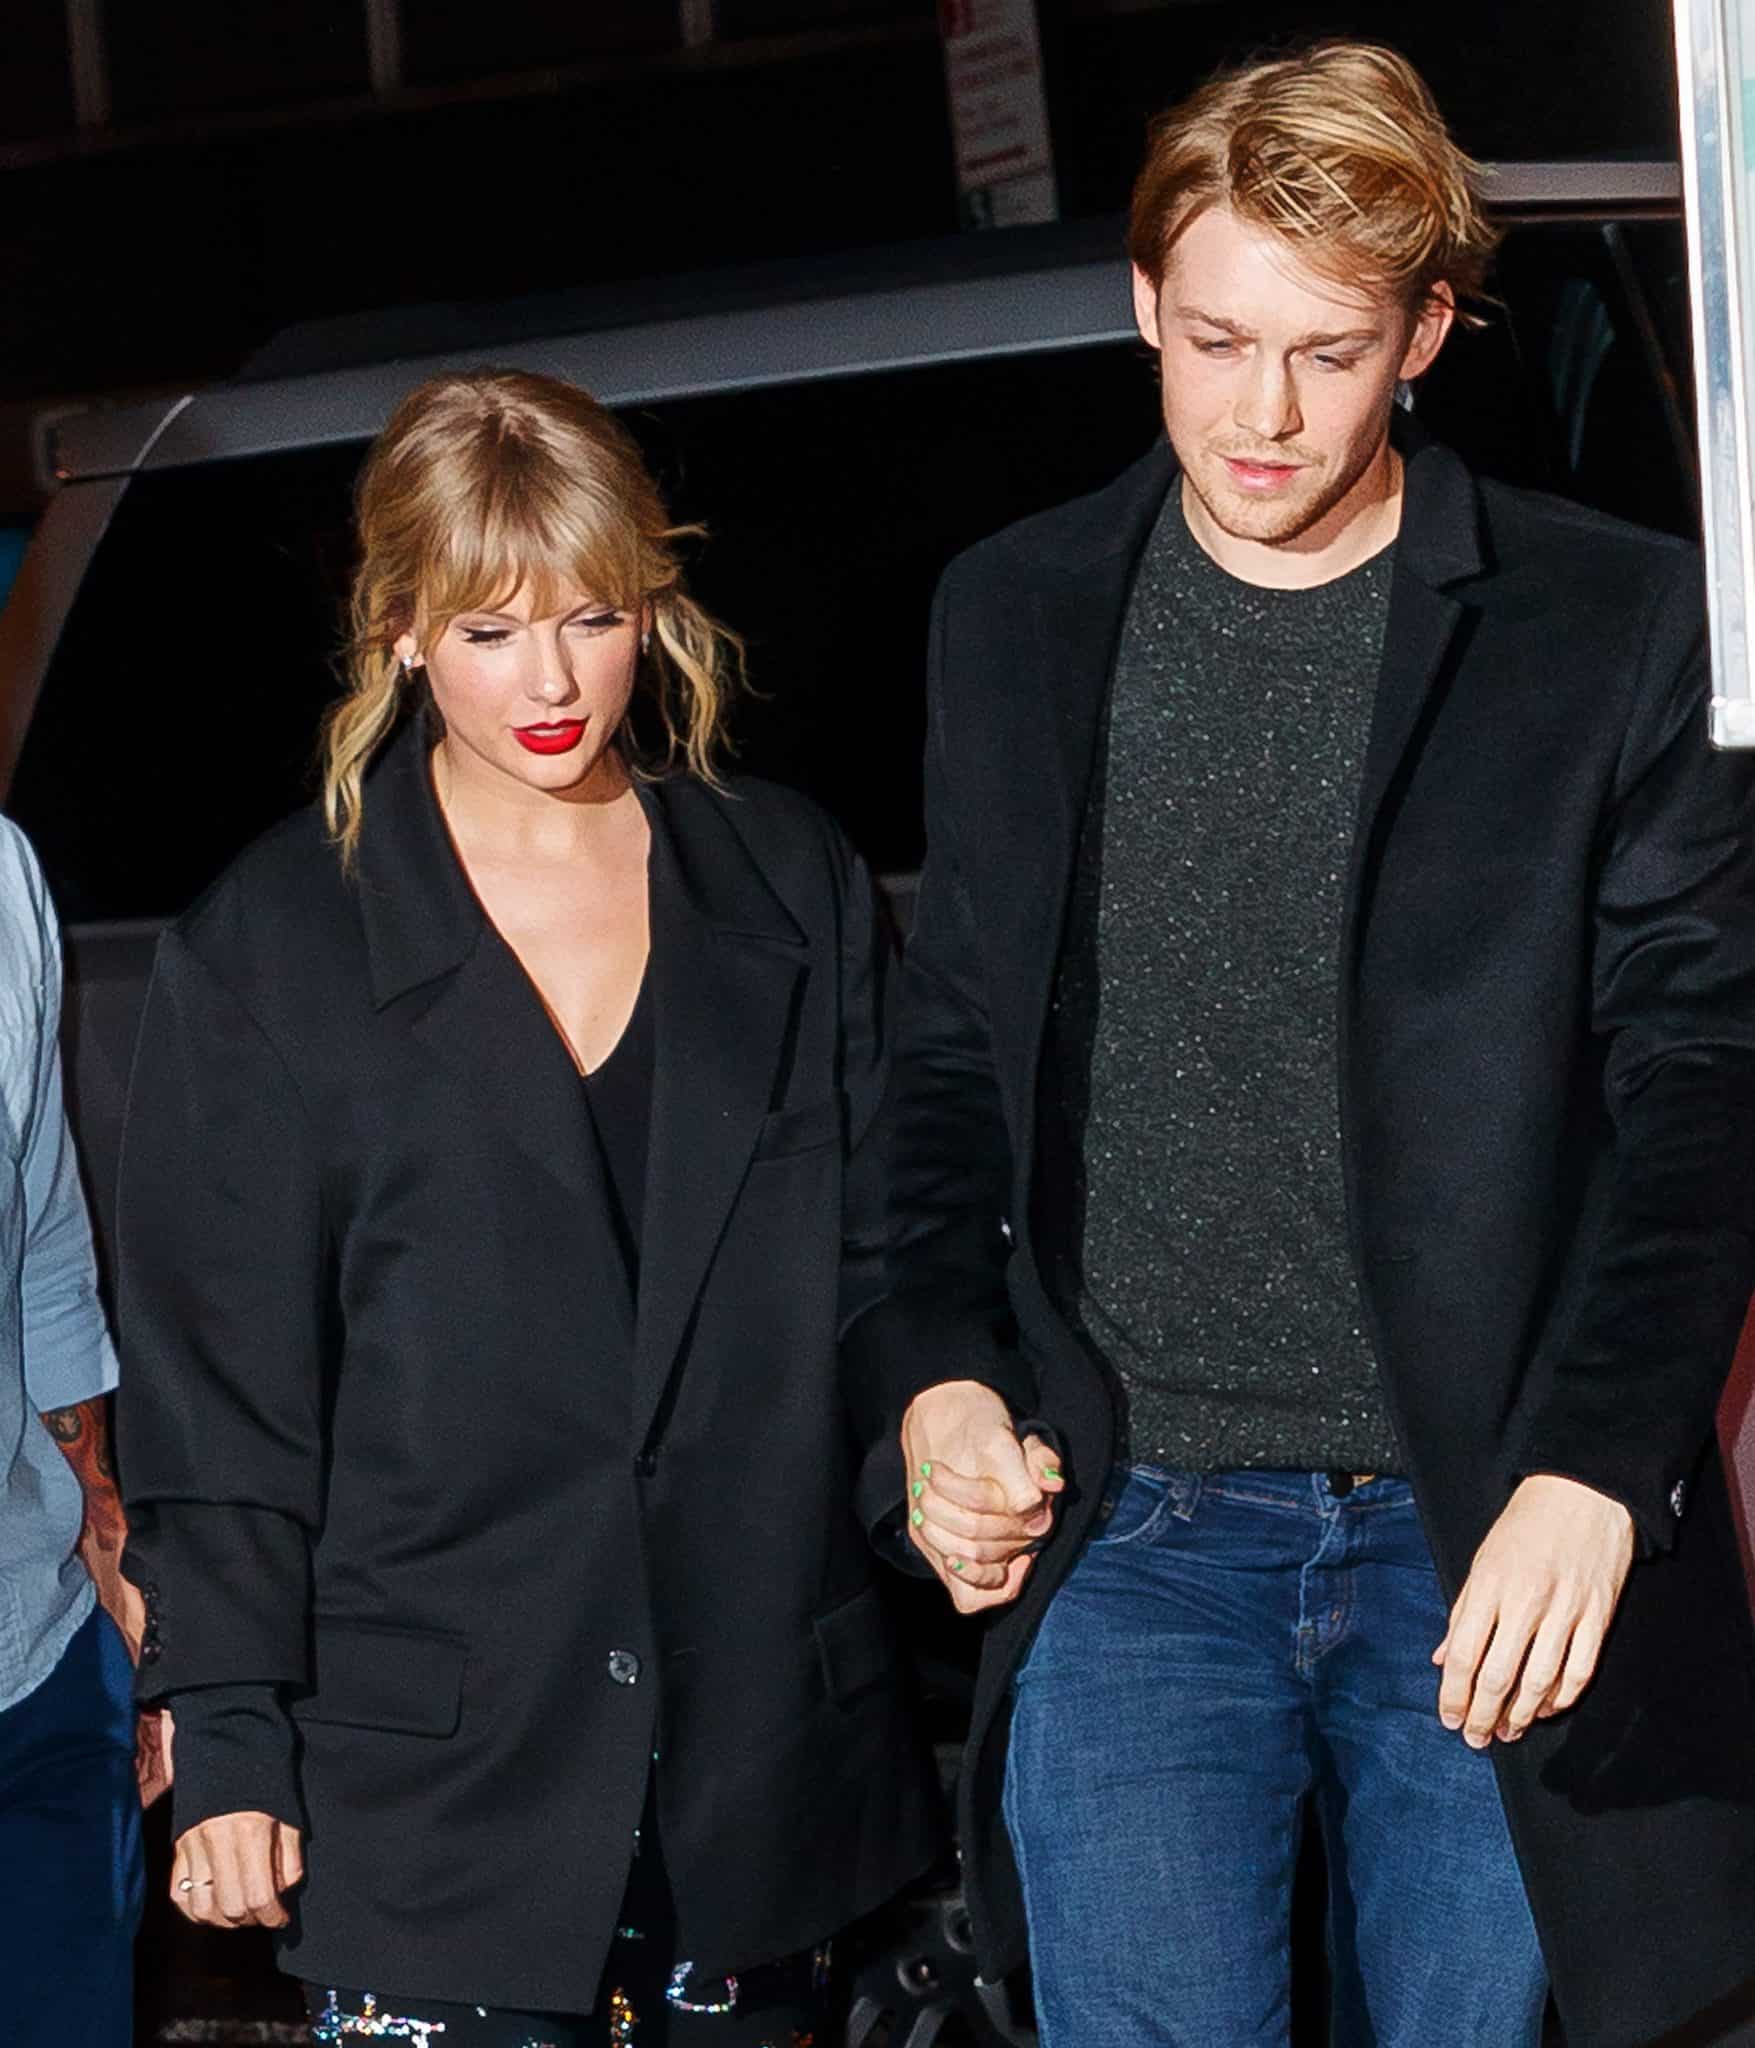 Taylor Swift's Boyfriend, Joe Alwyn How They Met & More